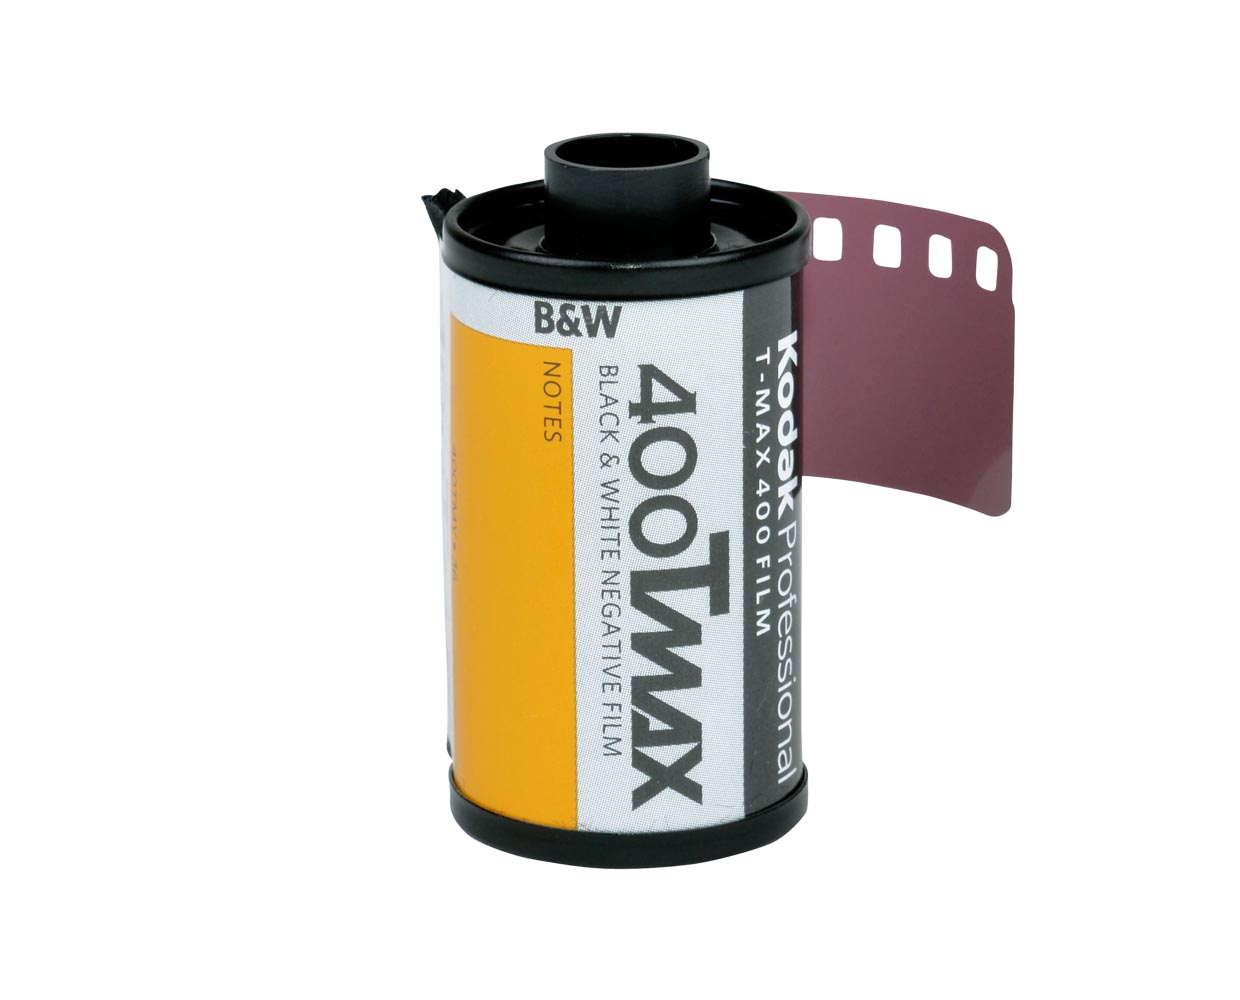 รูปภาพของ ฟิล์มขาวดำ Kodak T-Max 400 Professional 35mm 135-36 Black and White Film 400Tmax Tmax ฟิล์ม ฟิล์มถ่ายรูป